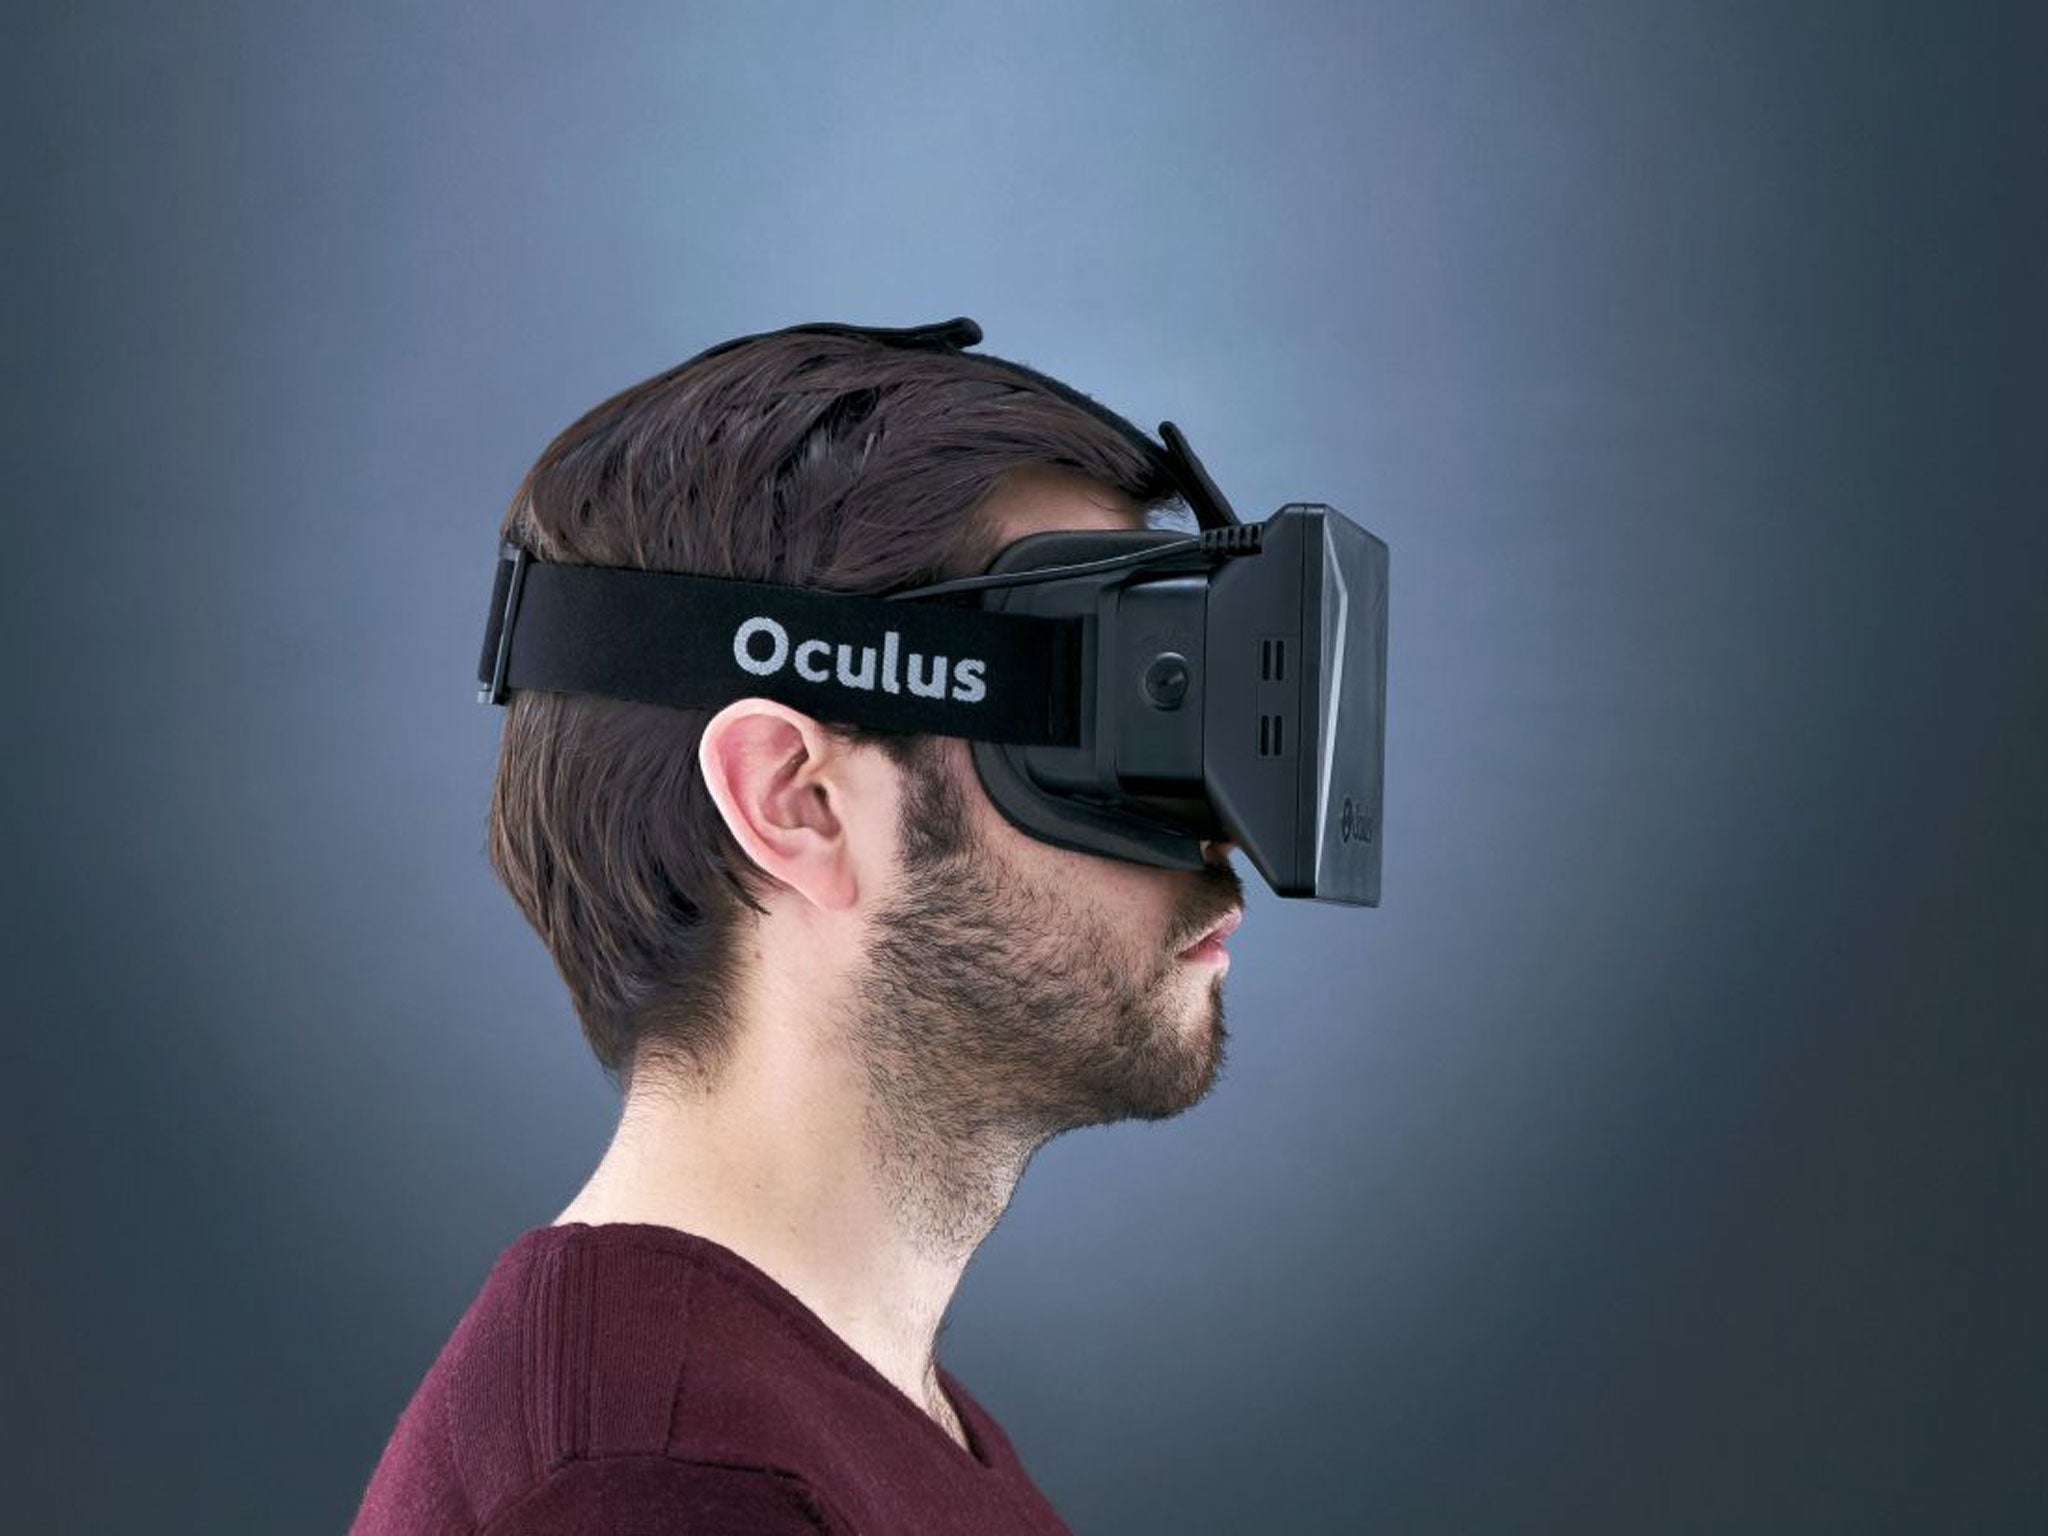 O vr. Шлем Oculus Rift. ВР очки Окулус. VR шлем Oculus. Очки виртуальной реальности Oculus Rift.